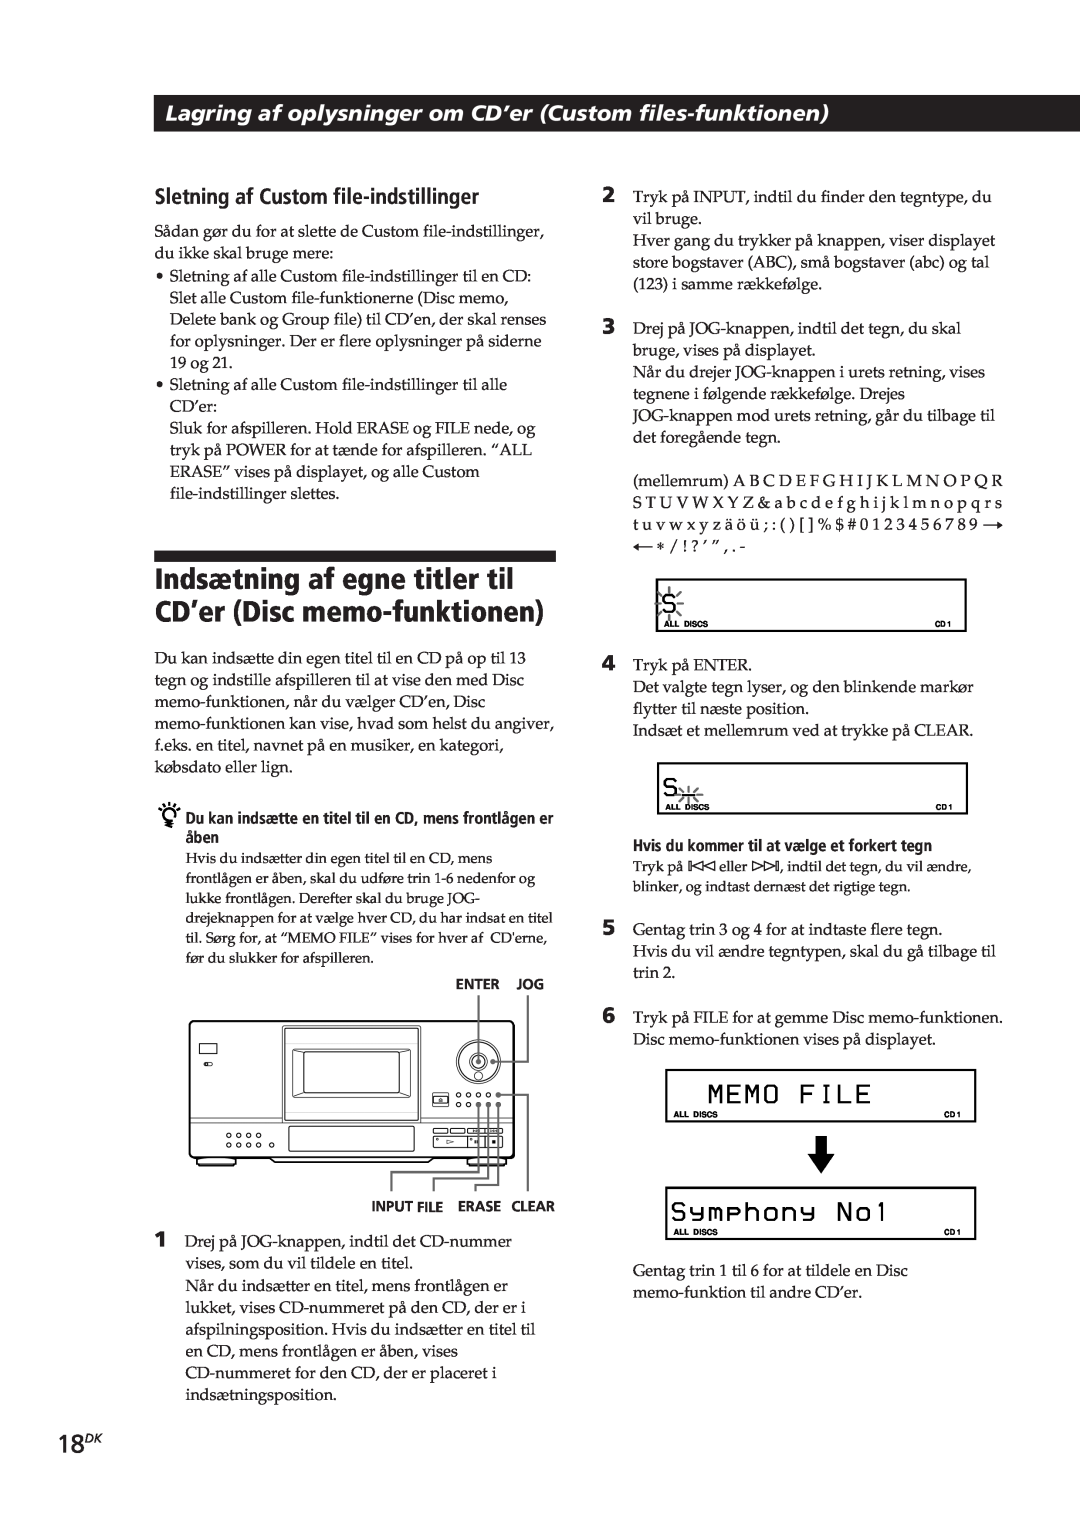 Sony CDP-CX153 manual 18DK, Me M O F I Le, S y m p h o n y No, Sletning af Custom file-indstillinger 